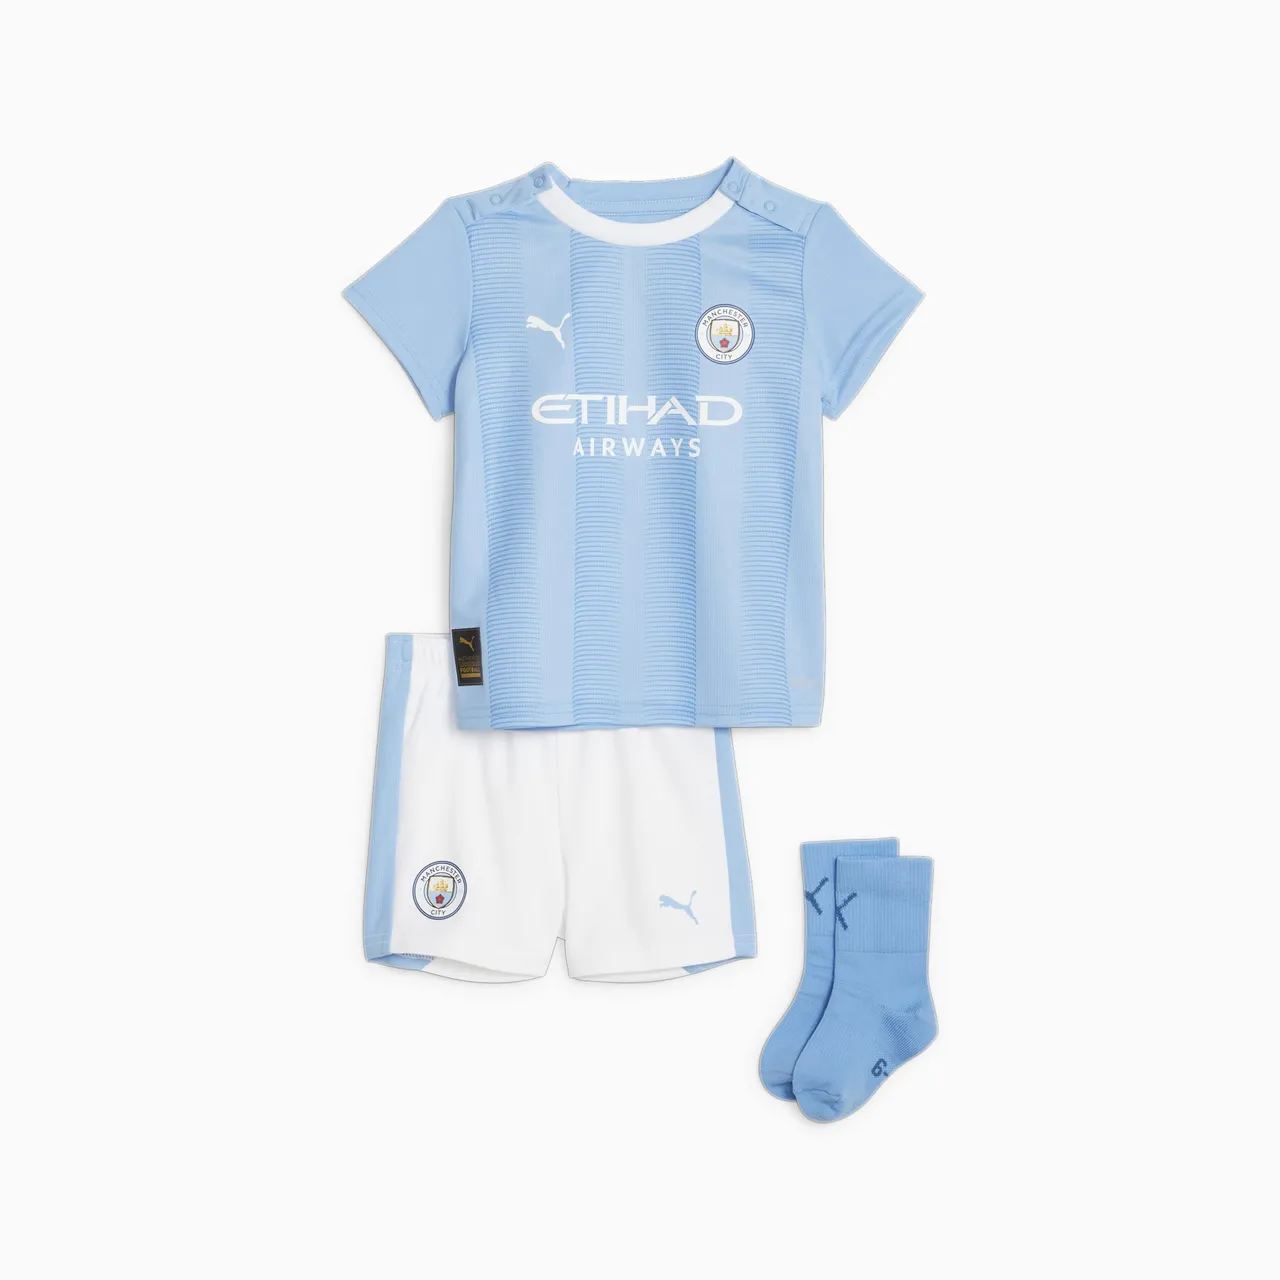 PUMA Manchester City F.C. Home Set Baby Für Kinder, Blau/Weiß, Größe: 86, Kleidung